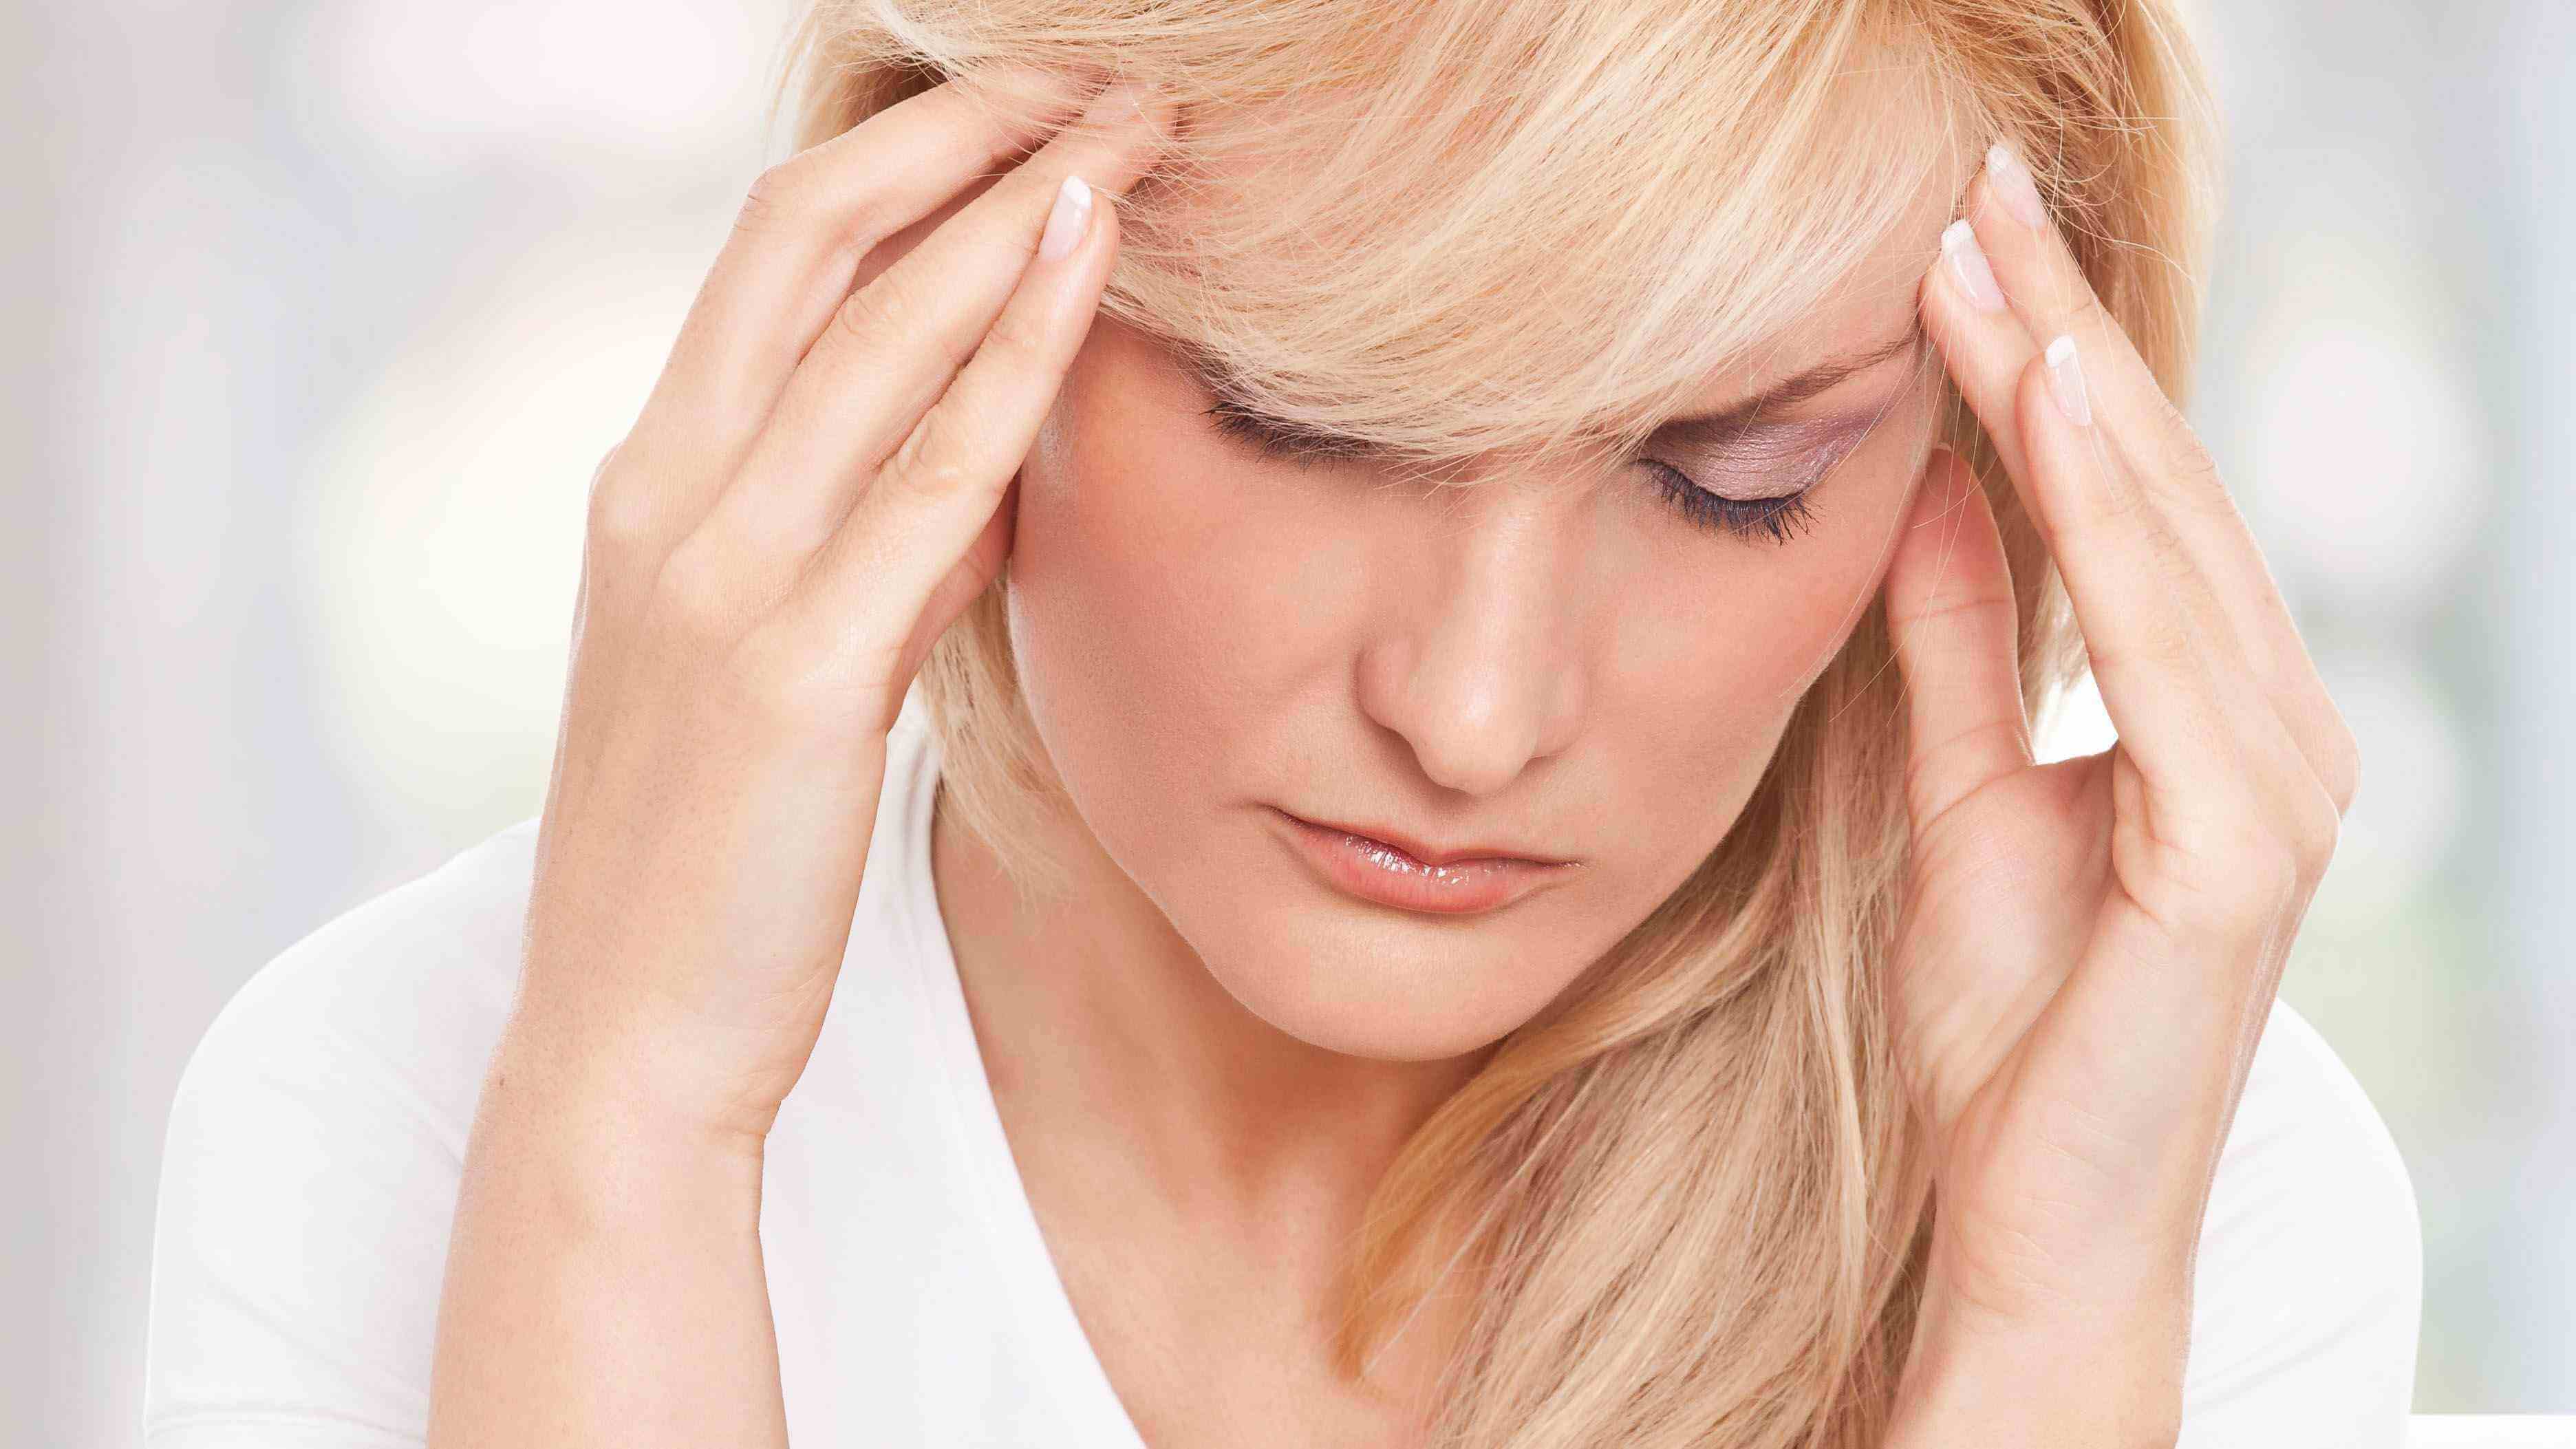 维生素B1服用后可能出现头痛疲倦